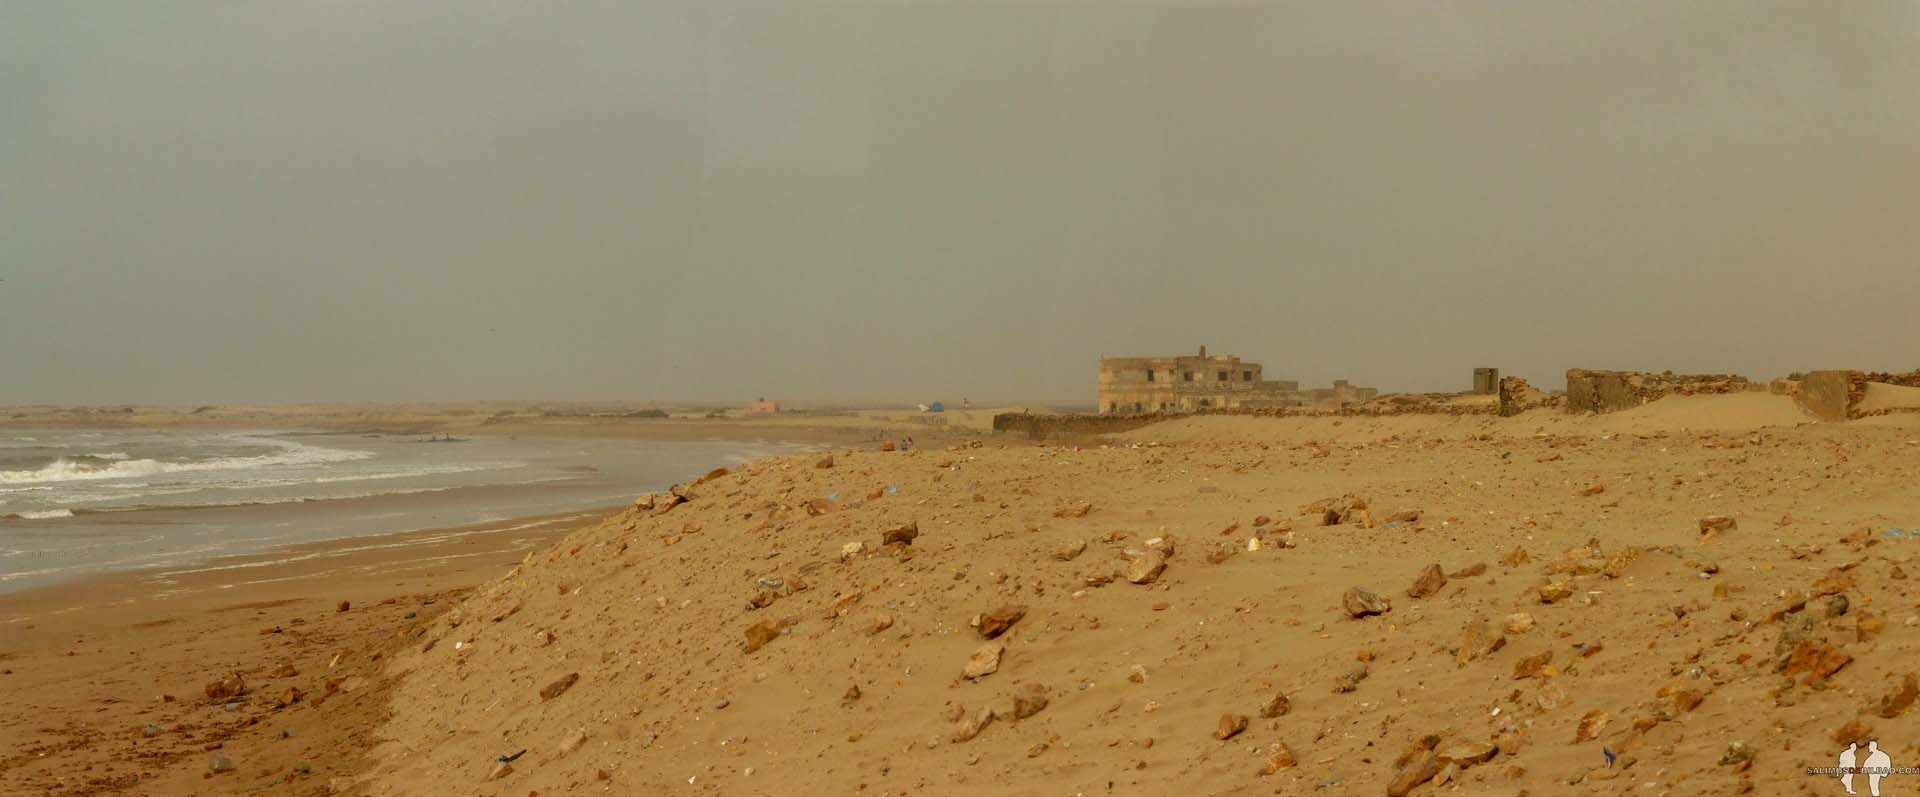 Viajar por libre a Marruecos Pano, Edificio abandonado junto a la playa, Tarfaya